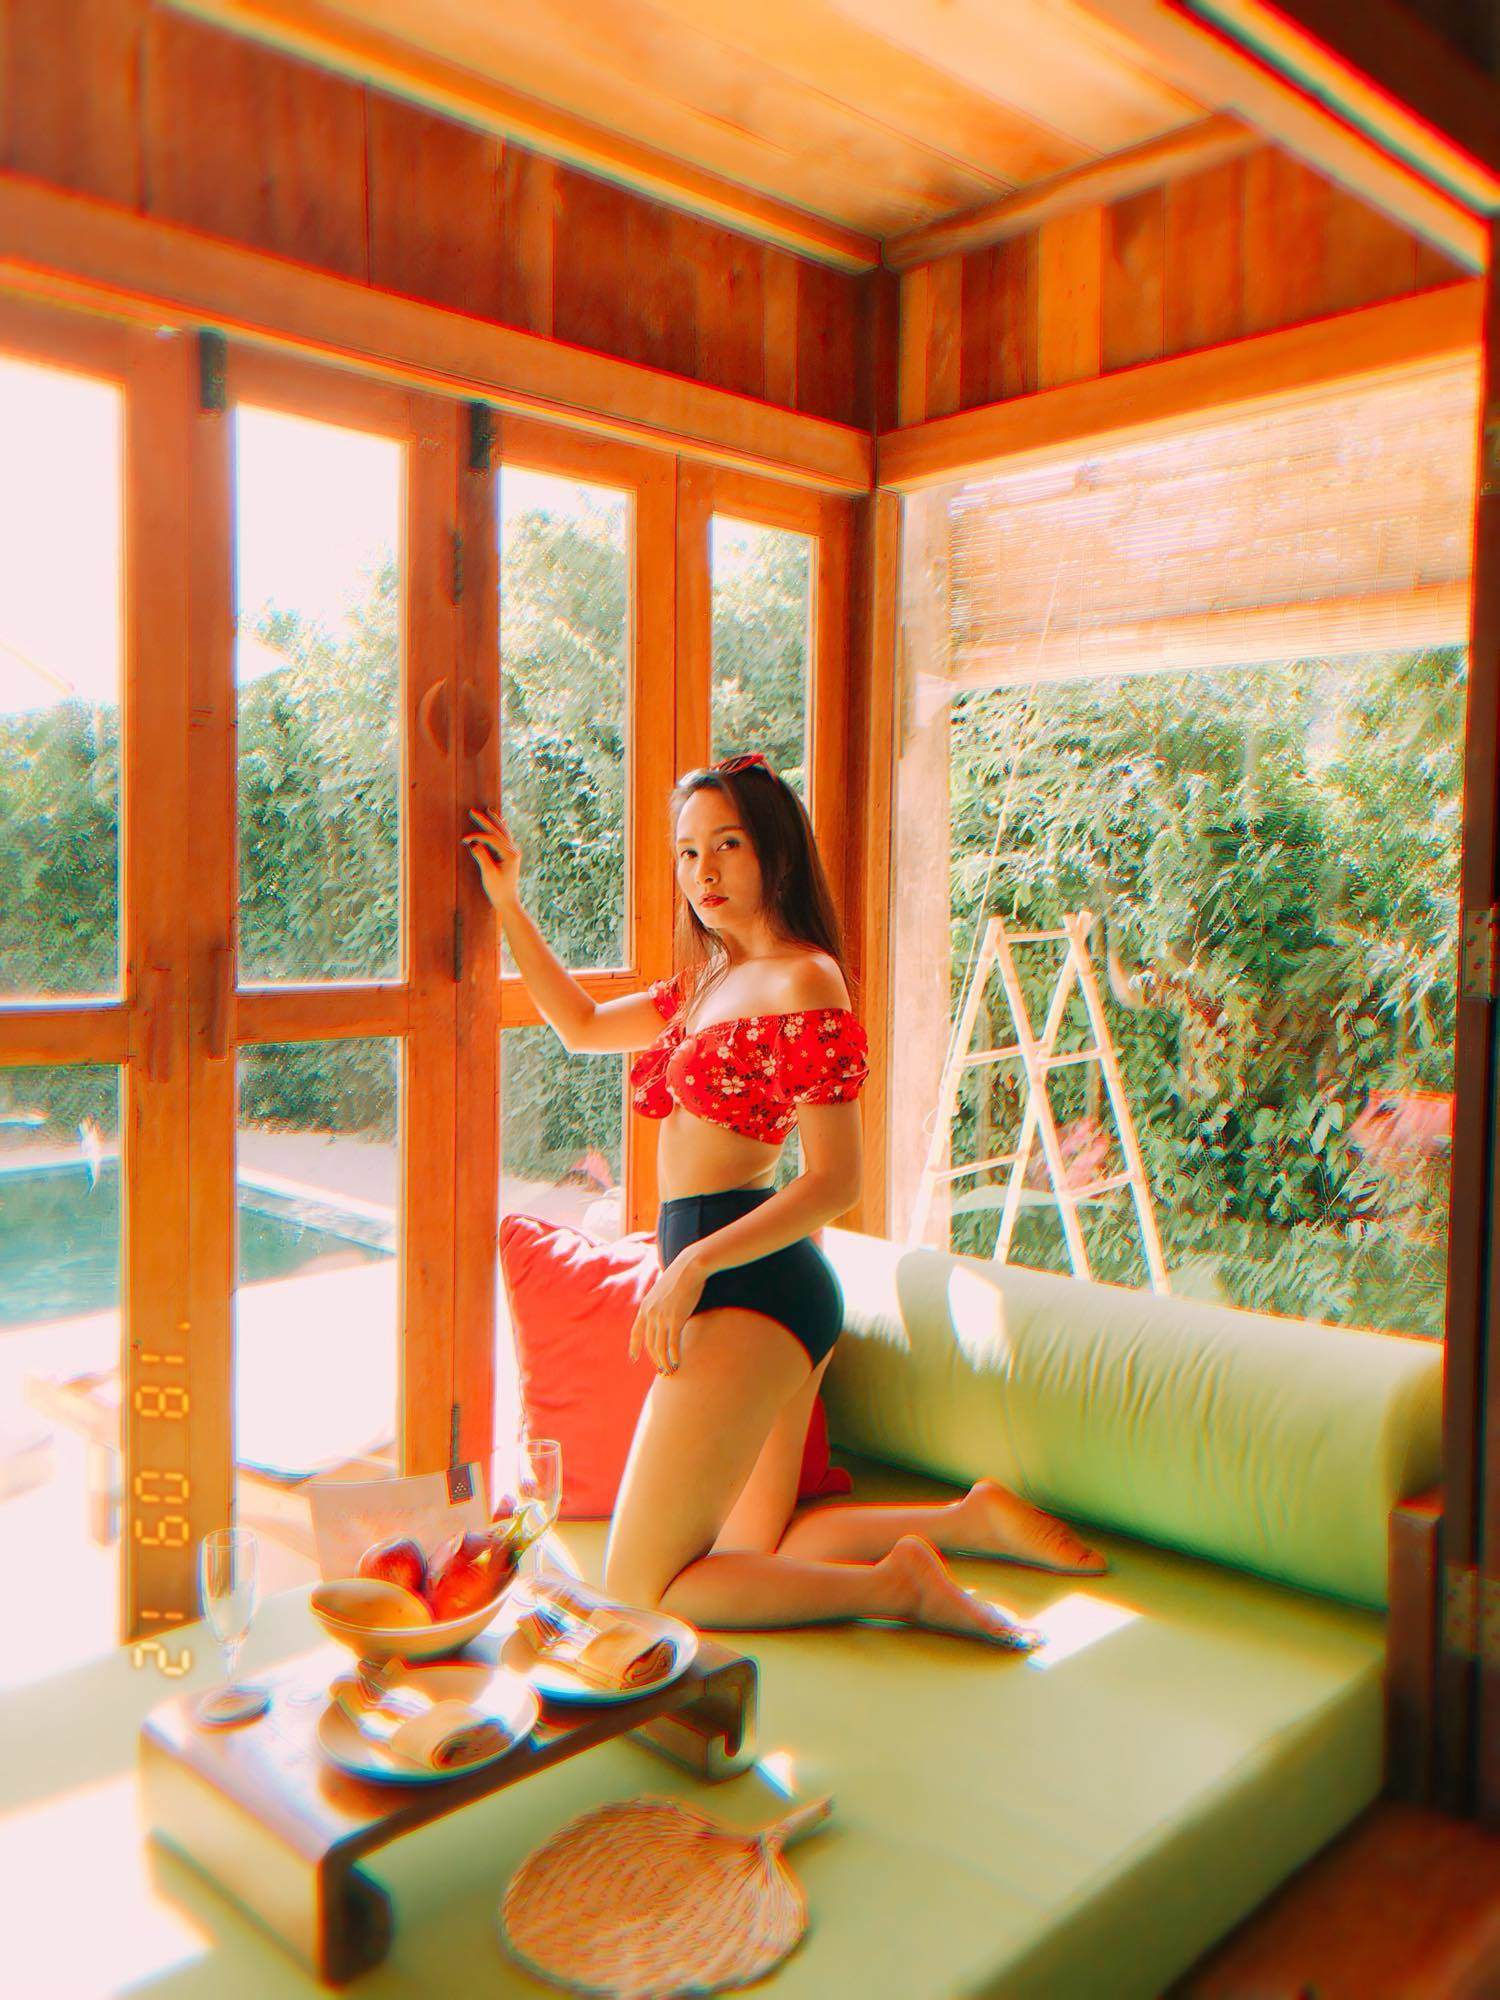 Bảo Thanh “chặt đẹp” tình địch trong “Về nhà đi con” với bikini gợi cảm